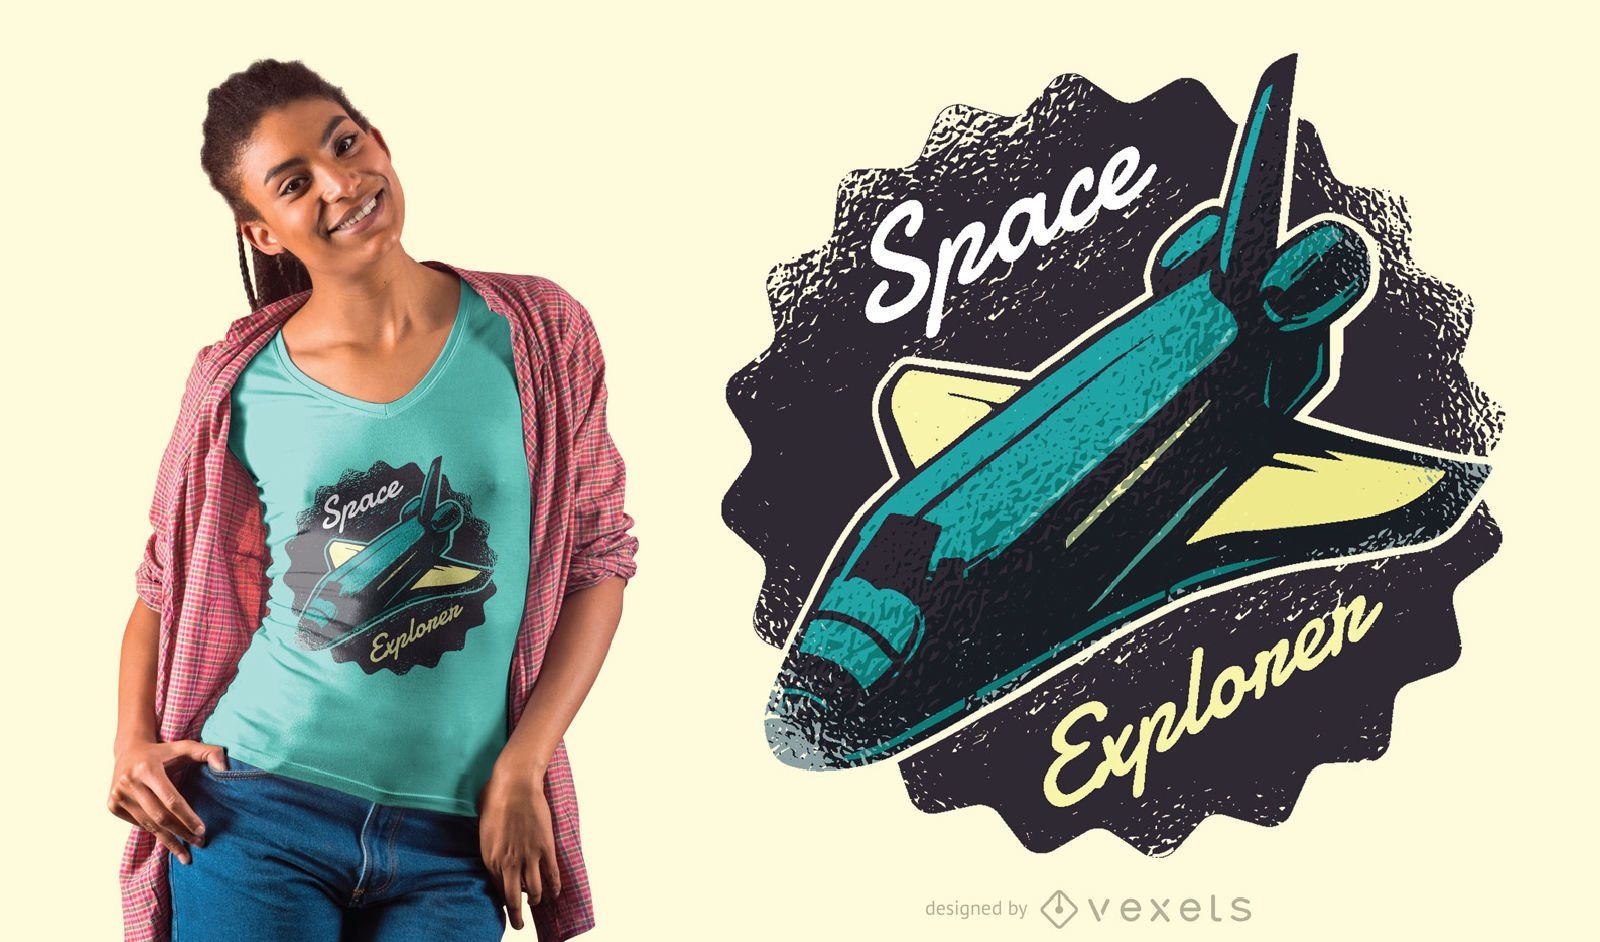 Design de camiseta do ônibus espacial explorador